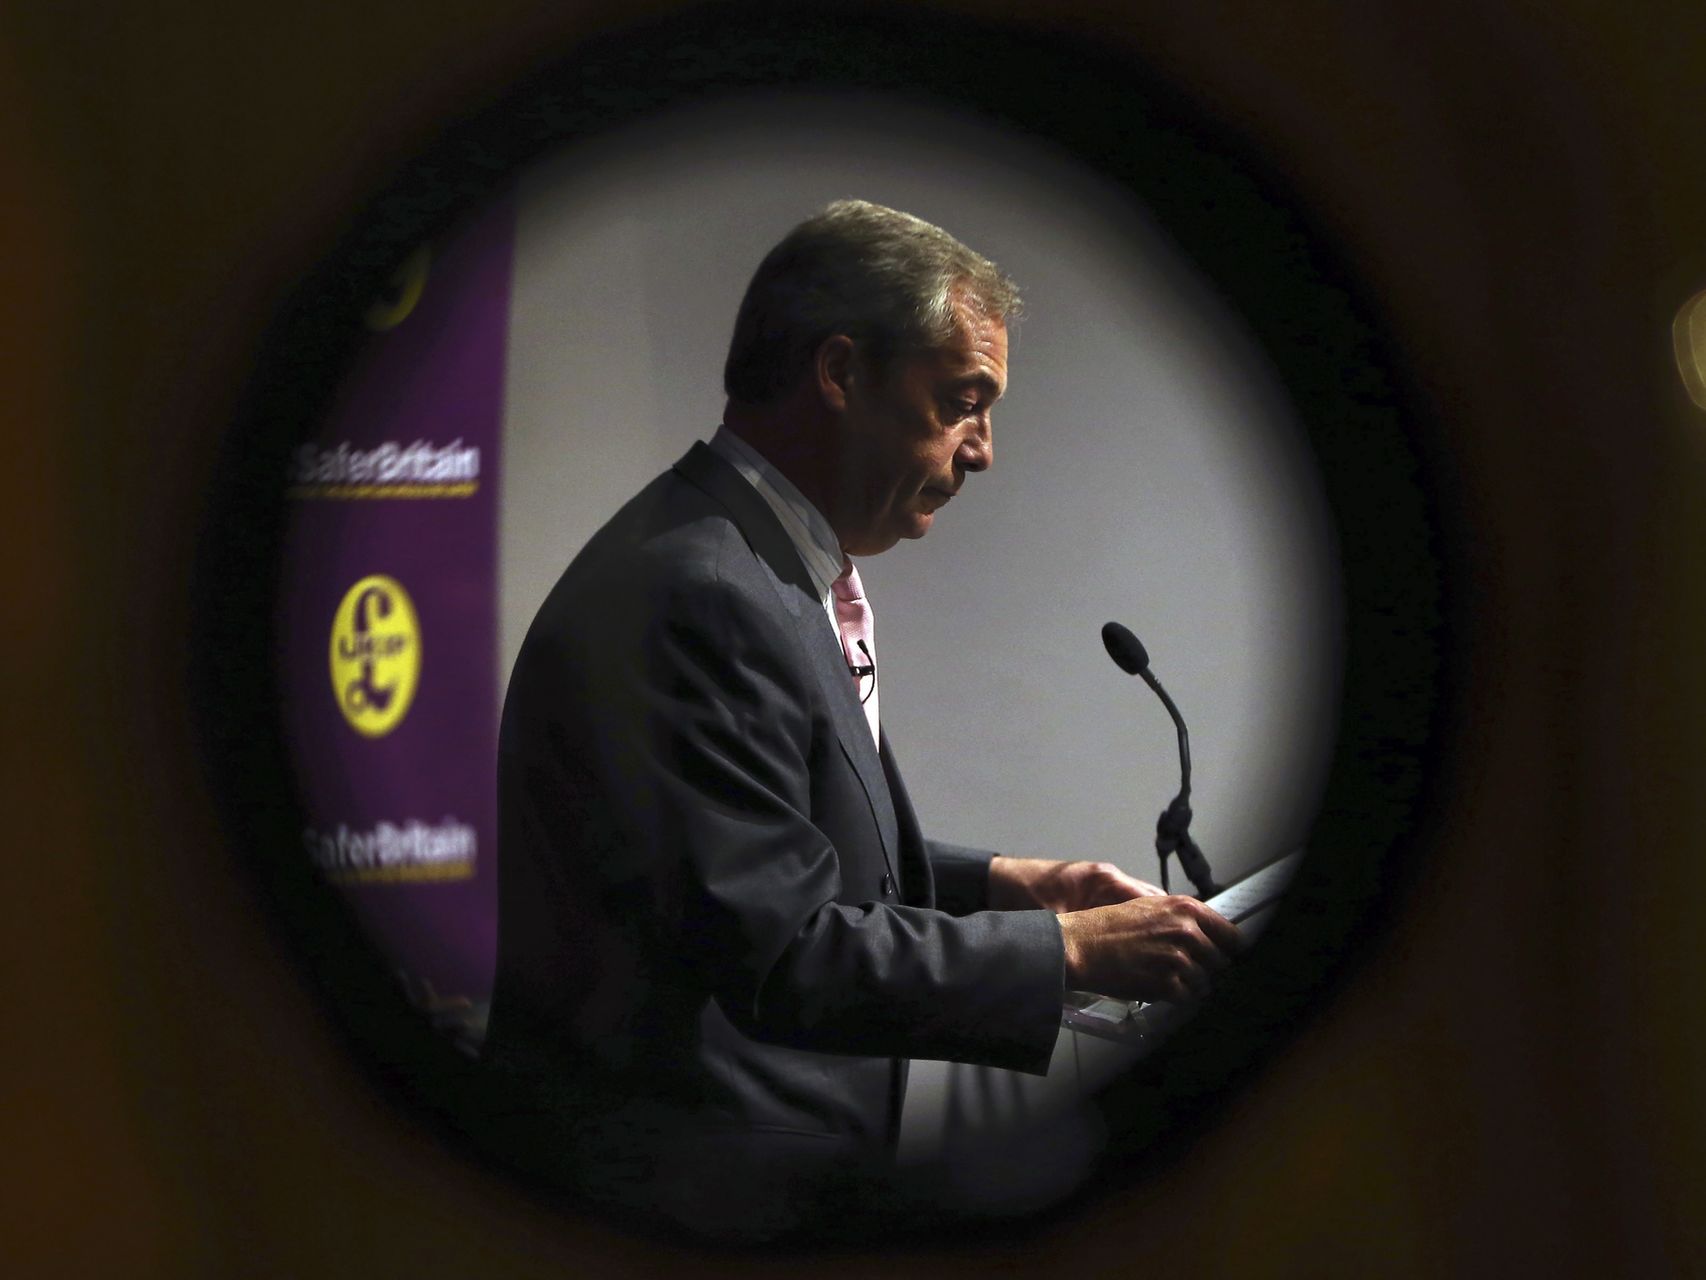 Nigel-Farage-UKIP-favor-brexit